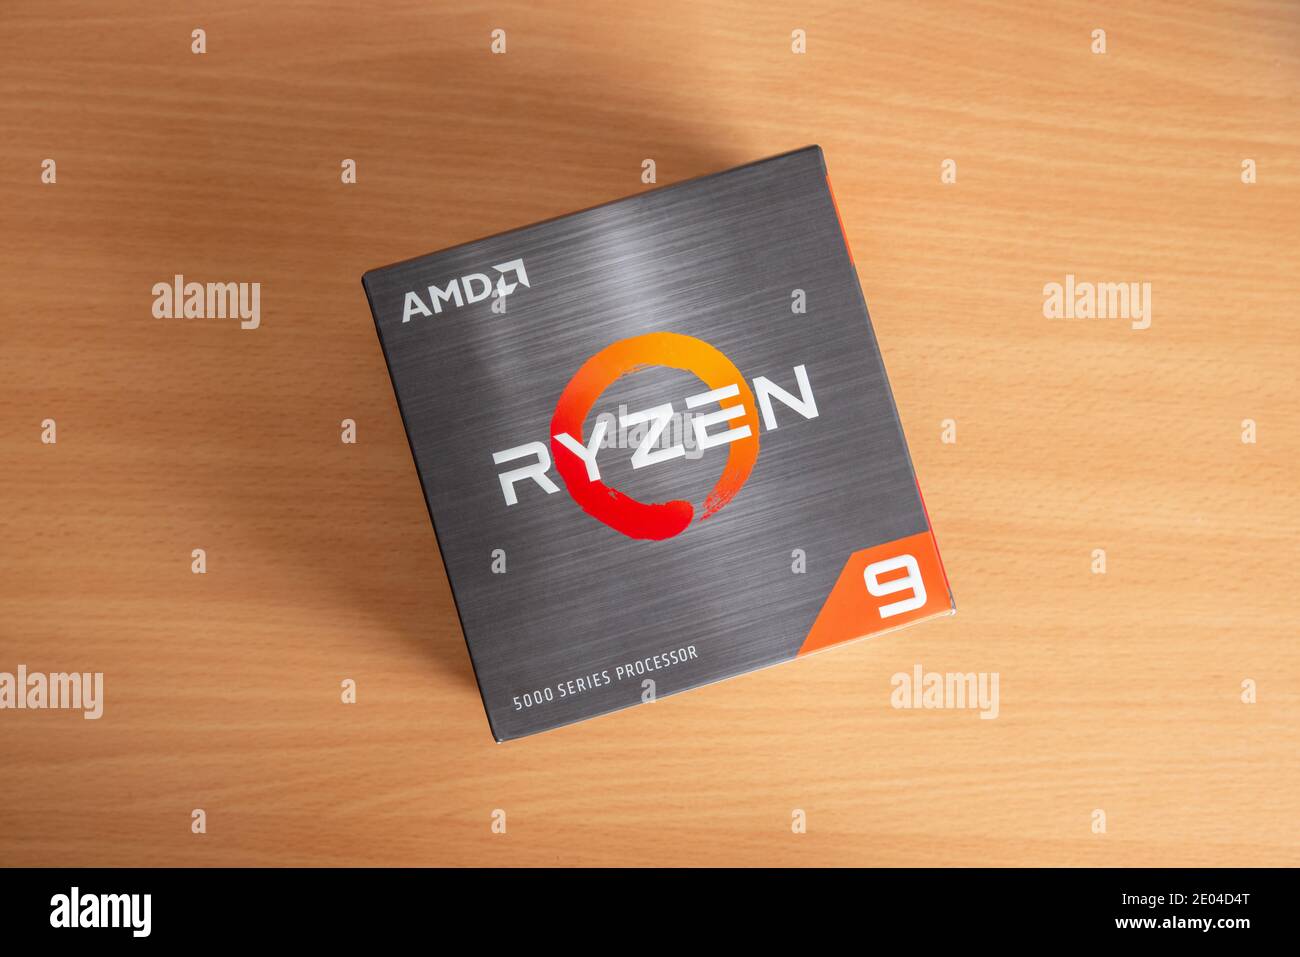 Sarajevo, Bosnie-Herzégovine - 29 décembre 2020 : nouveau processeur AMD Ryzen 9 5900x de cinquième génération sur table Banque D'Images